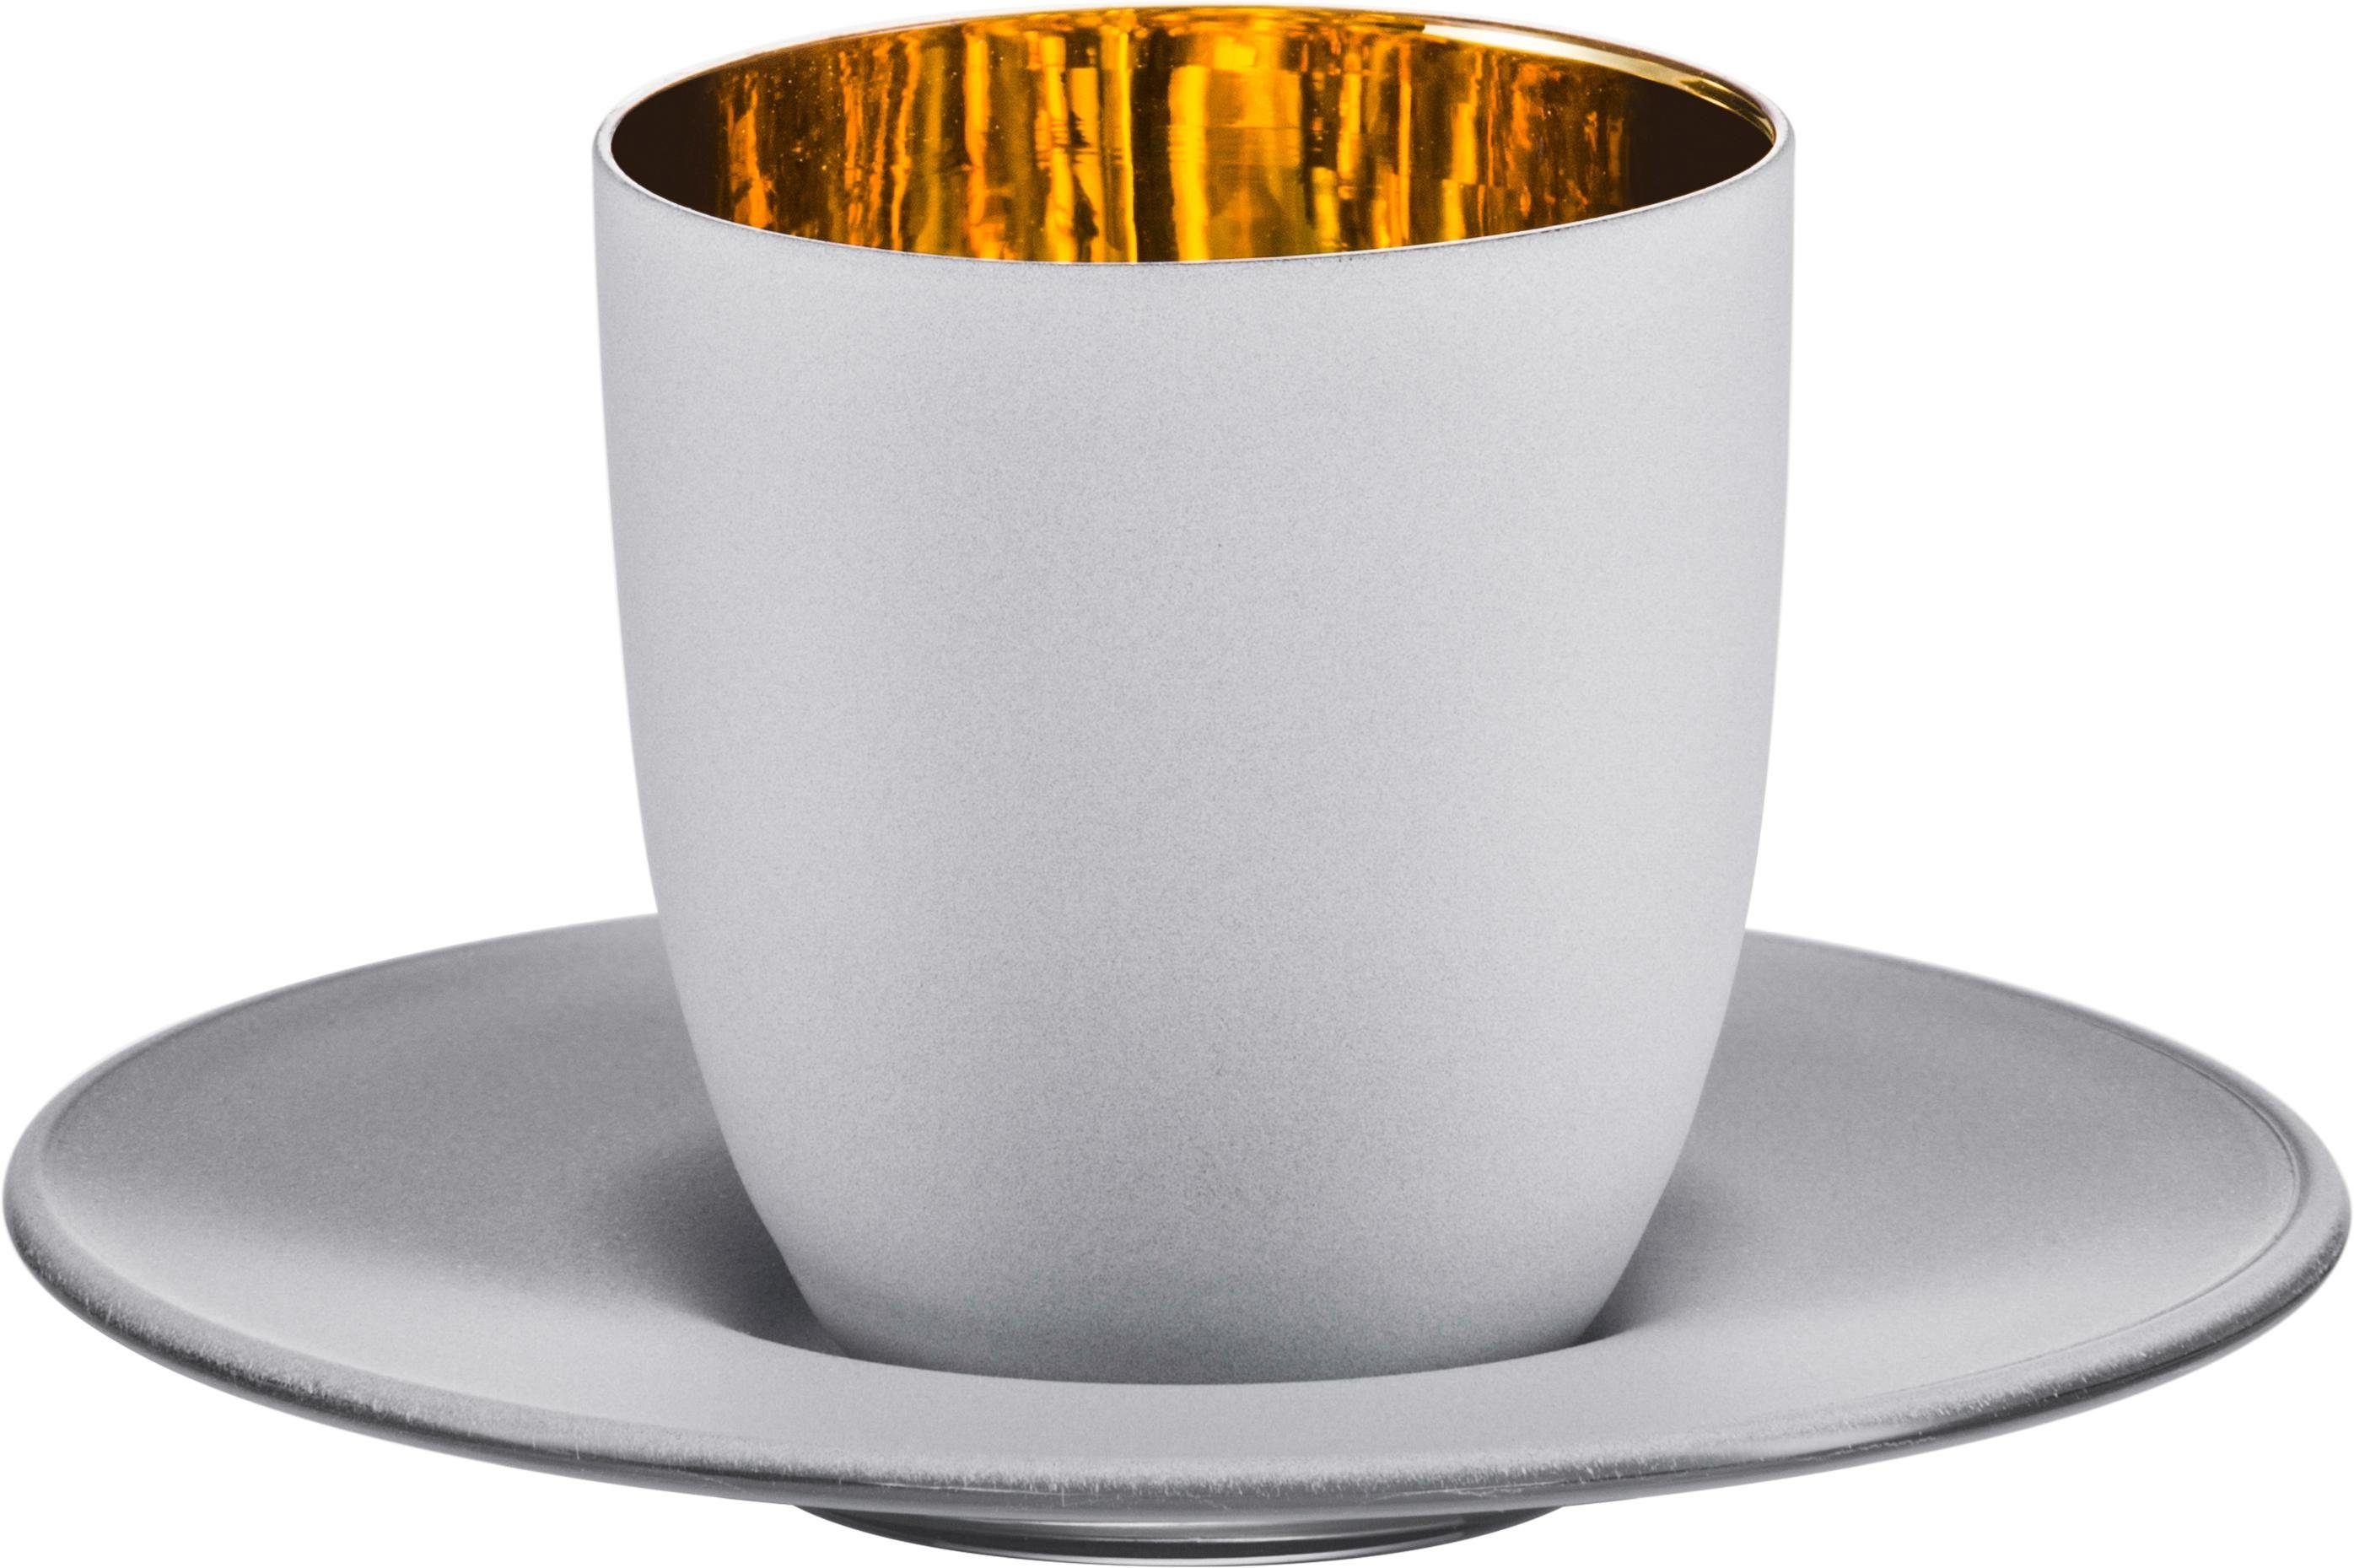 Eisch Espressoglas Cosmo gold, 100 Made ml, 2-teilig, Echtgold, in wird bleifrei, Germany, Handwäsche Kristallglas, handgefertigt, empfohlen